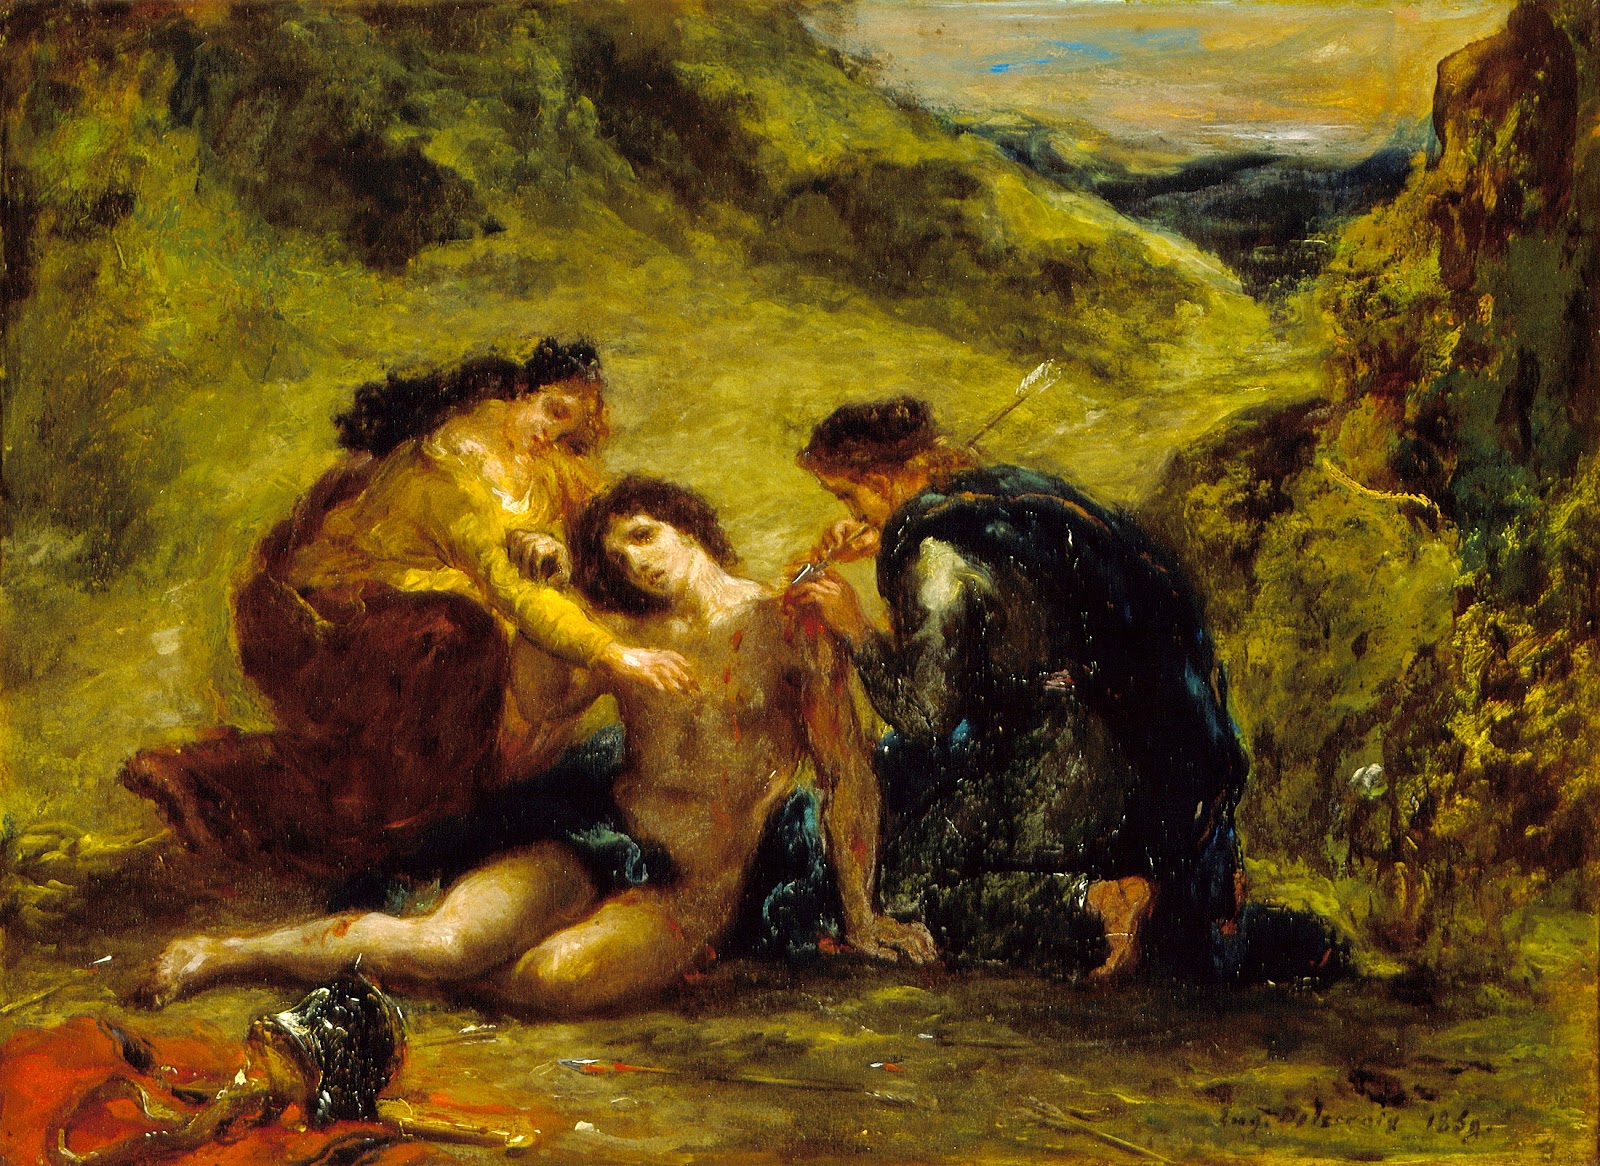 Eugene+Delacroix-1798-1863 (197).jpg